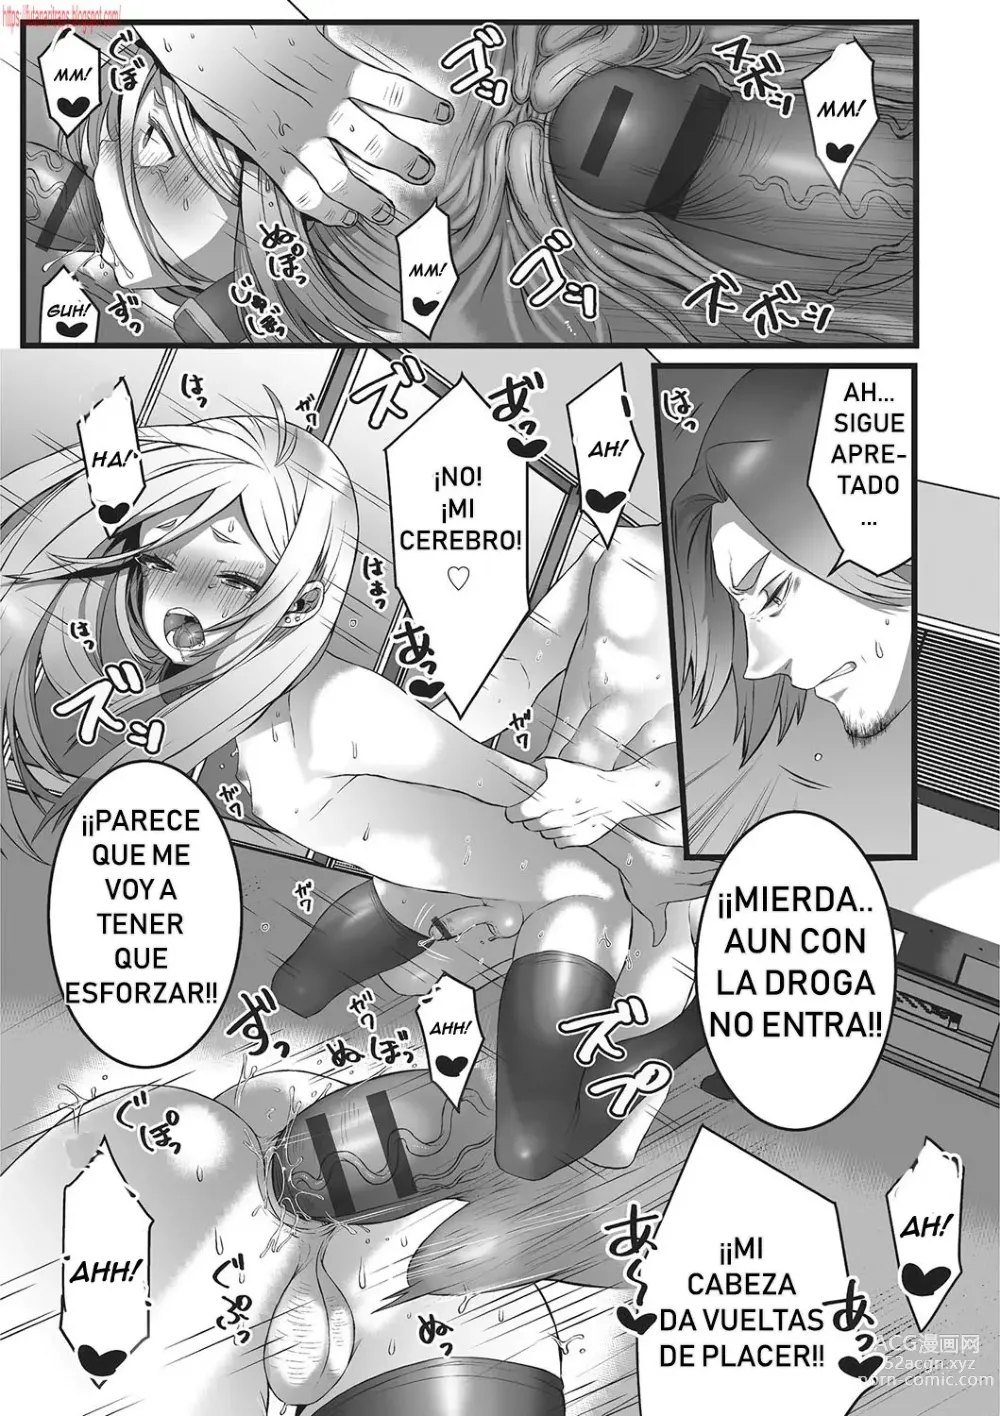 Page 15 of manga Himegoto